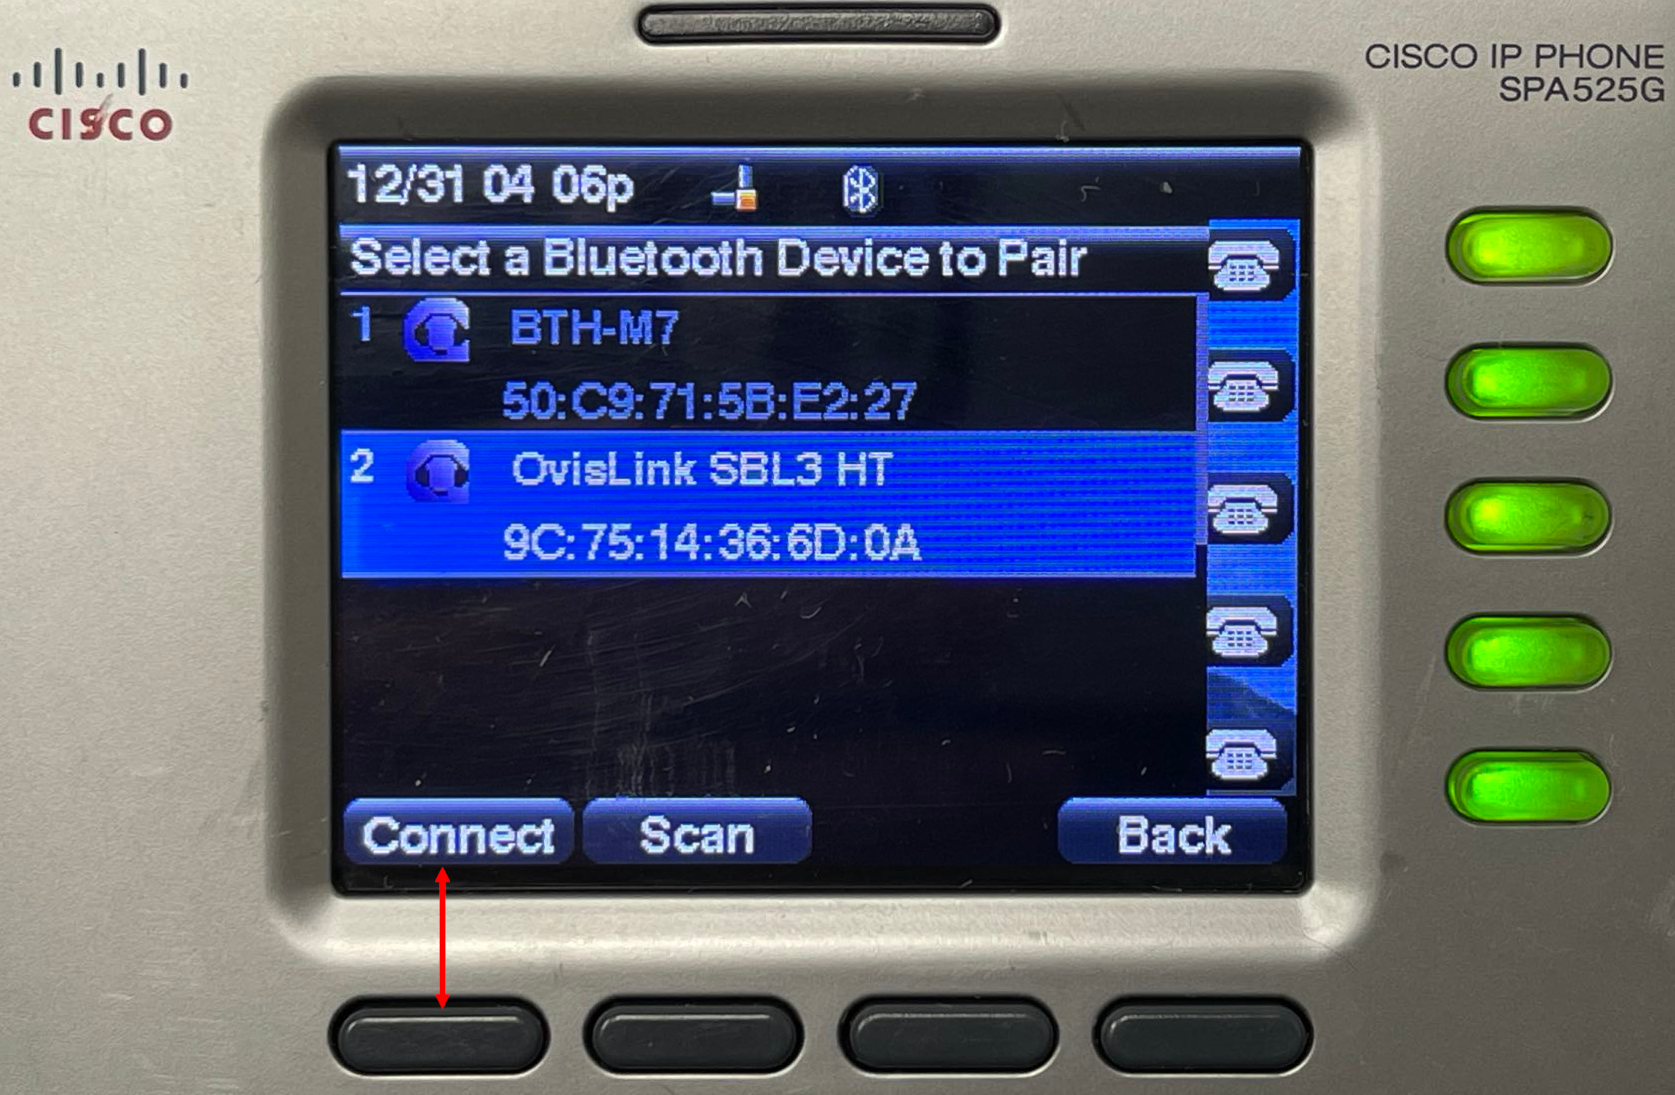 Cisco SPA 525G connect button